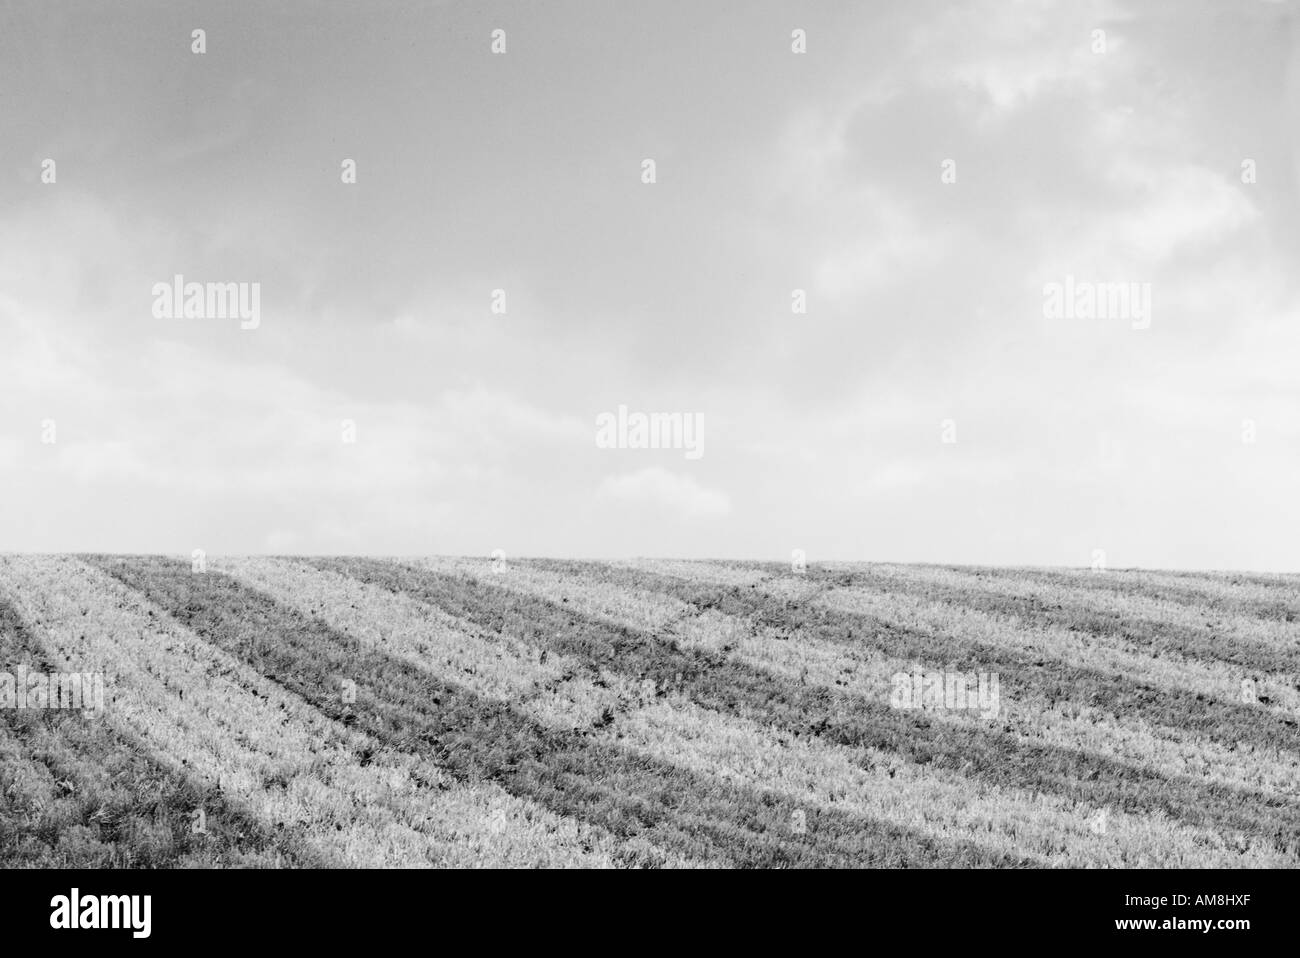 Diverse accattivanti paesaggi agricoli con un modello di forte Foto Stock